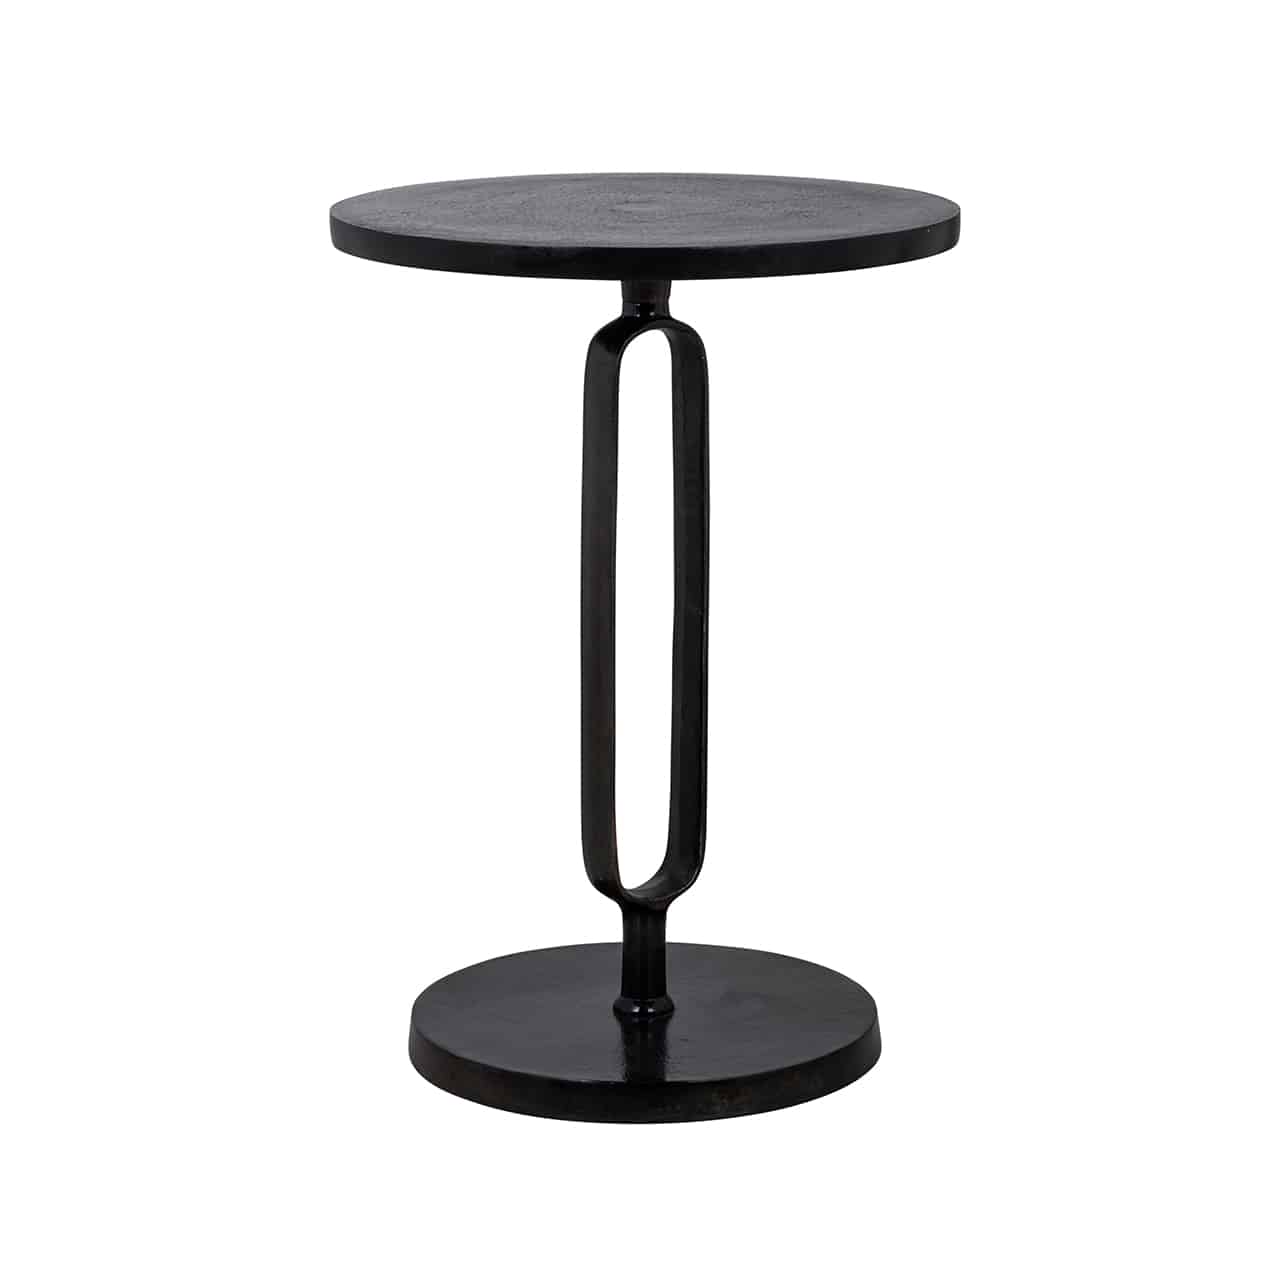 Schwarzer Beistelltisch mit einem runden Bodenteller, darauf  ein längliches Oval, oben und unten mit einem kleinen, runden Sockel, darauf eine runde Tischplatte.